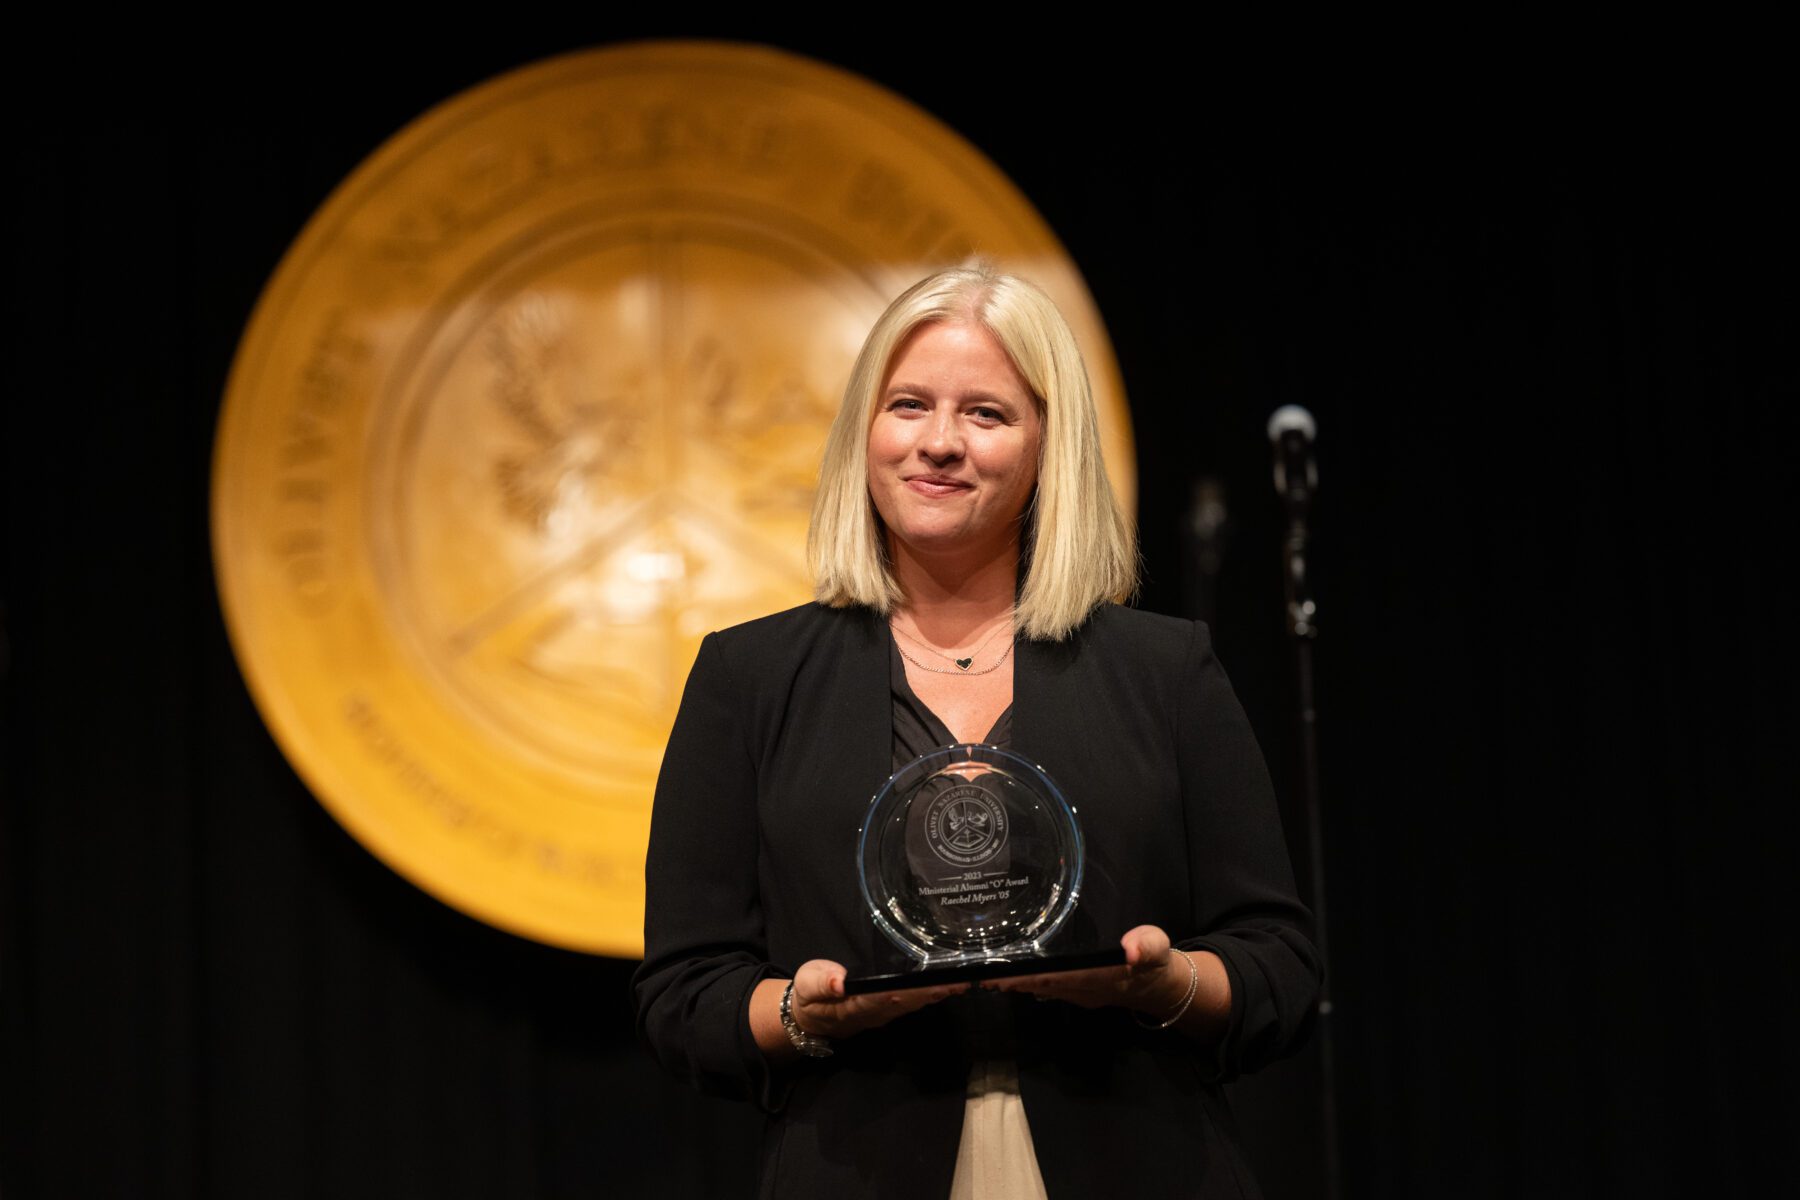 Rachel Meyers accept the "O" Award for Ministerial Alumni.